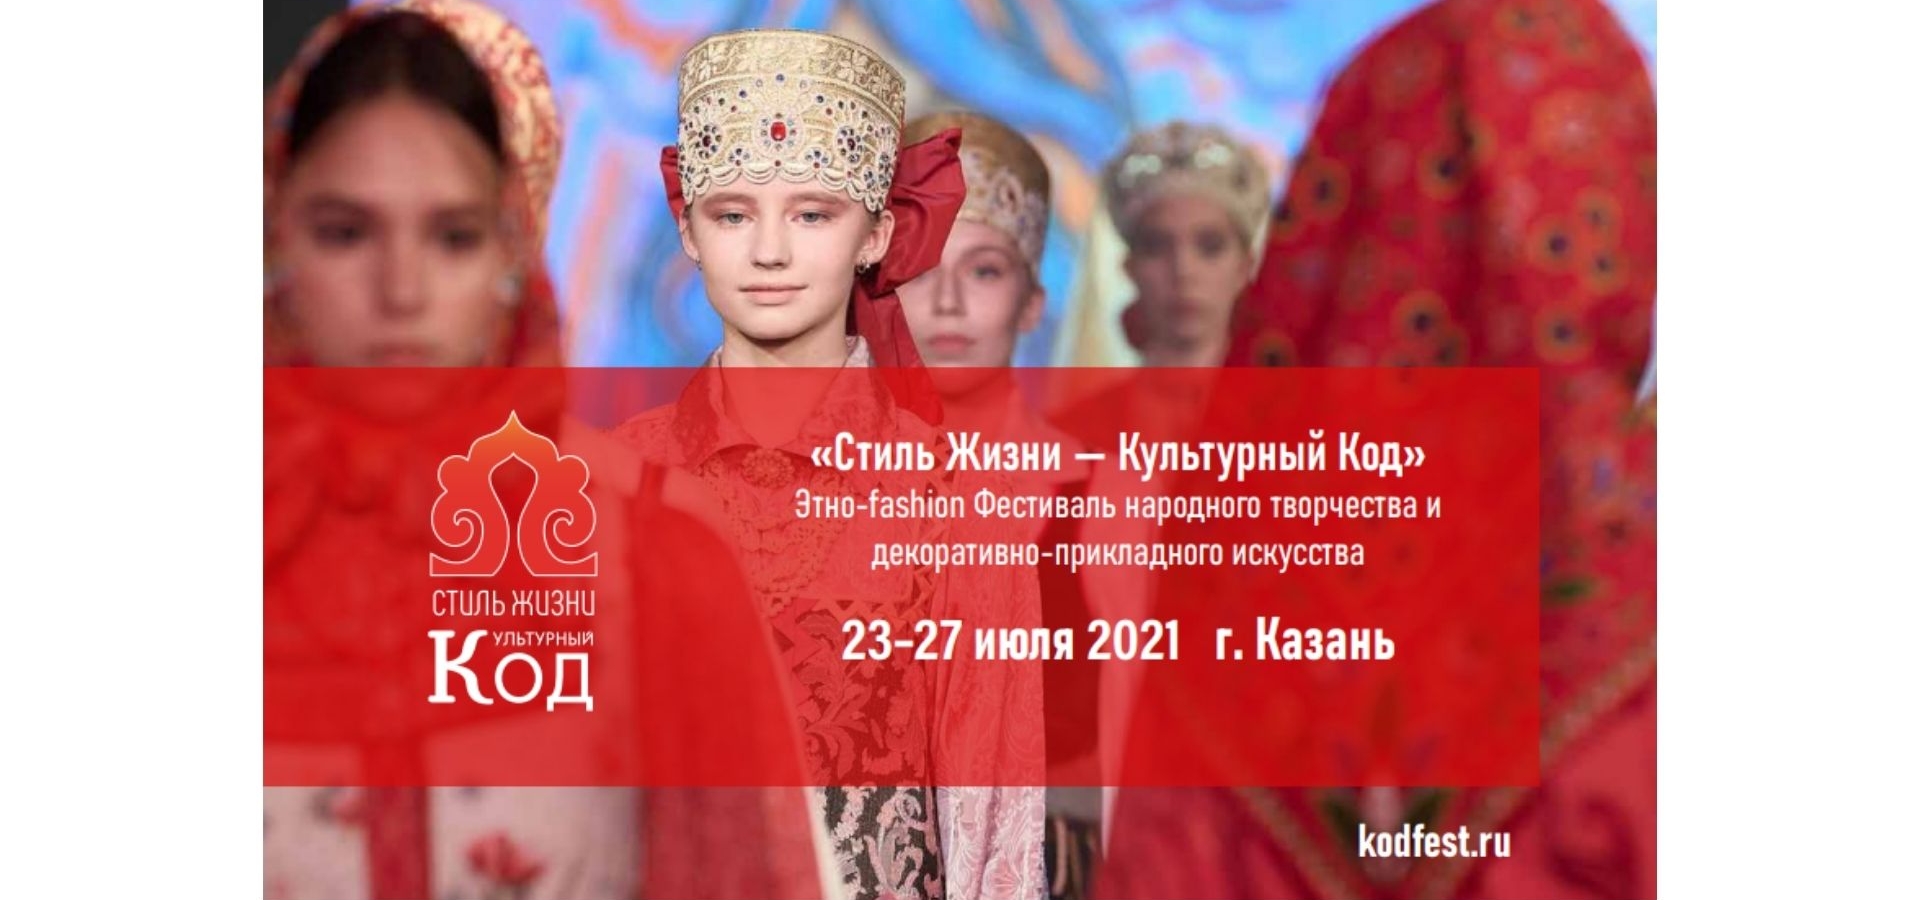 В Казани пройдет этно-fashion фестиваль «Стиль жизни - Культурный код»